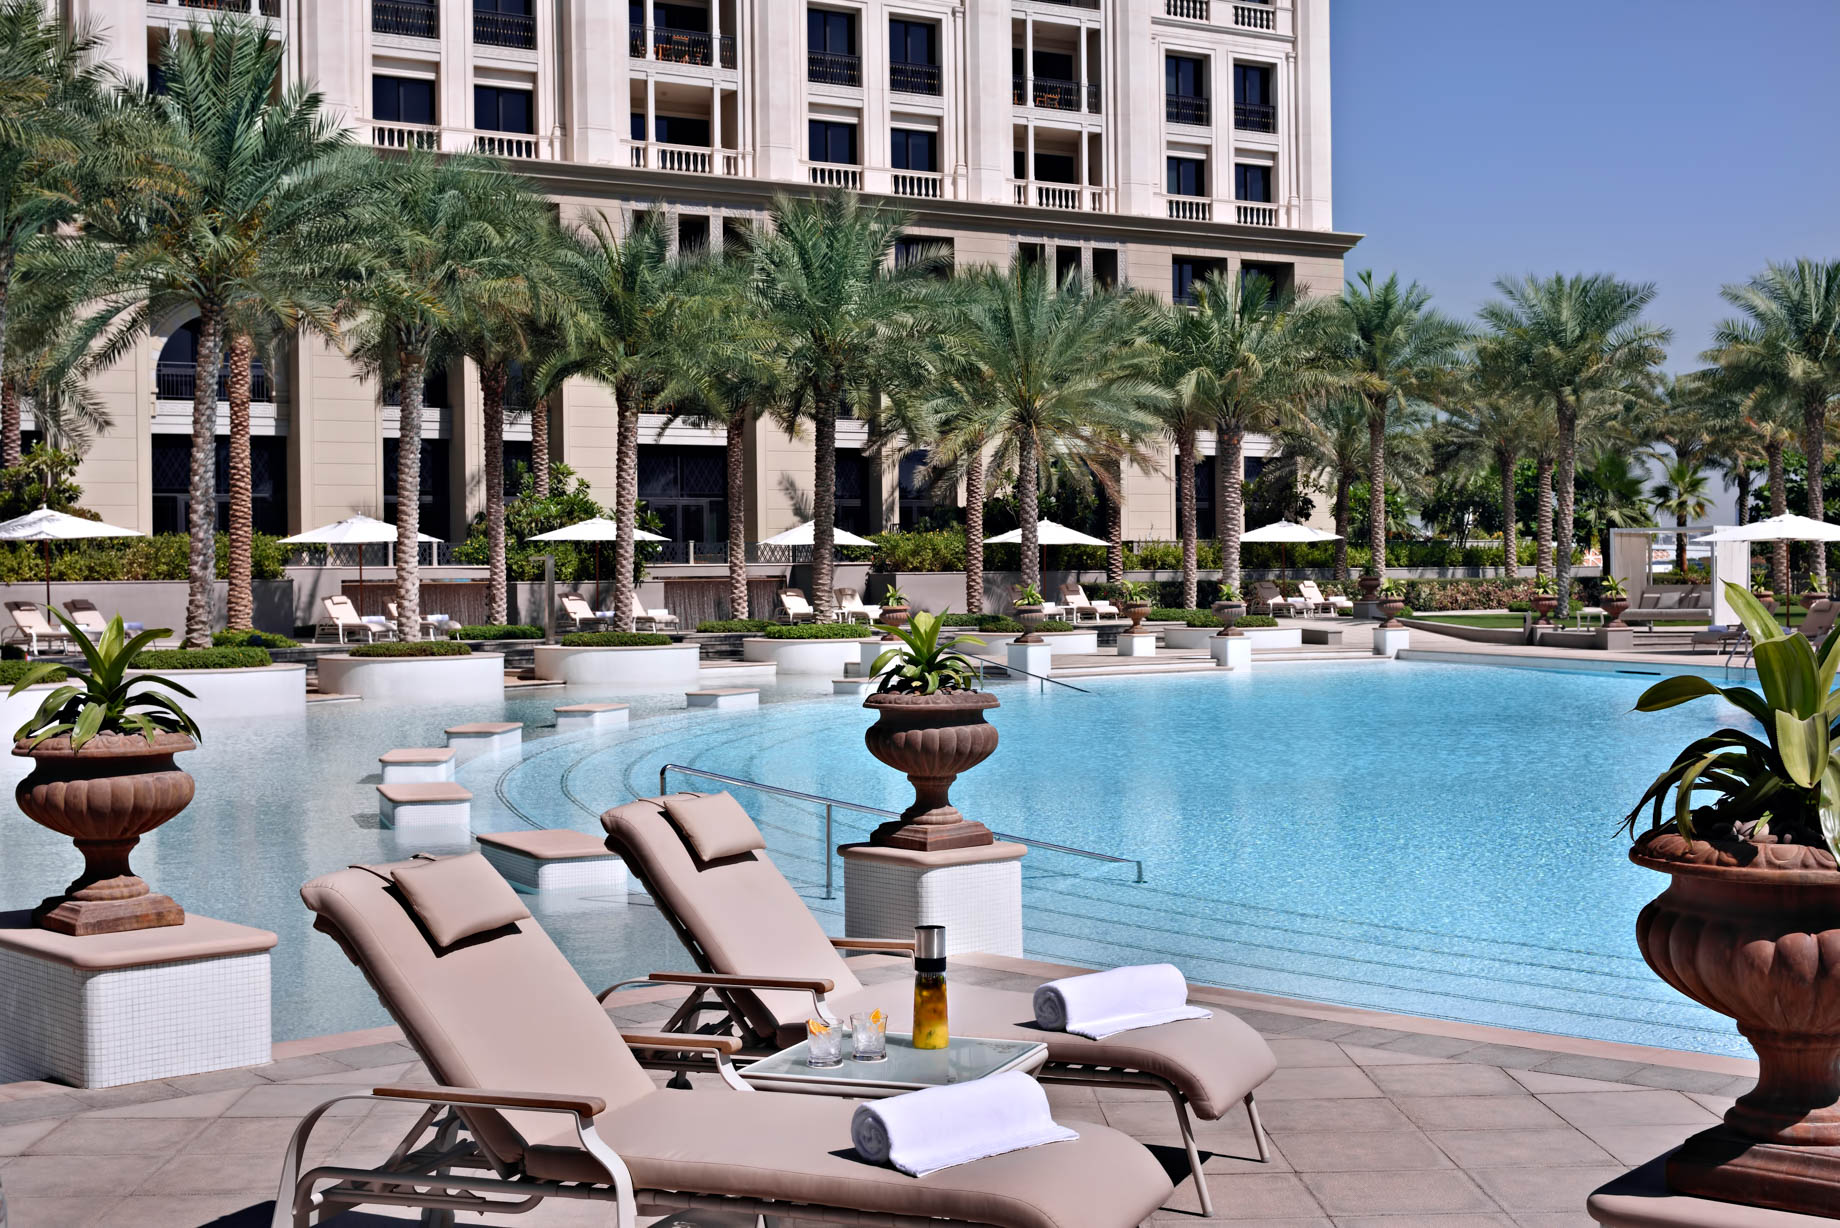 Palazzo Versace Dubai Hotel – Jaddaf Waterfront, Dubai, UAE – La Piscina Poolside